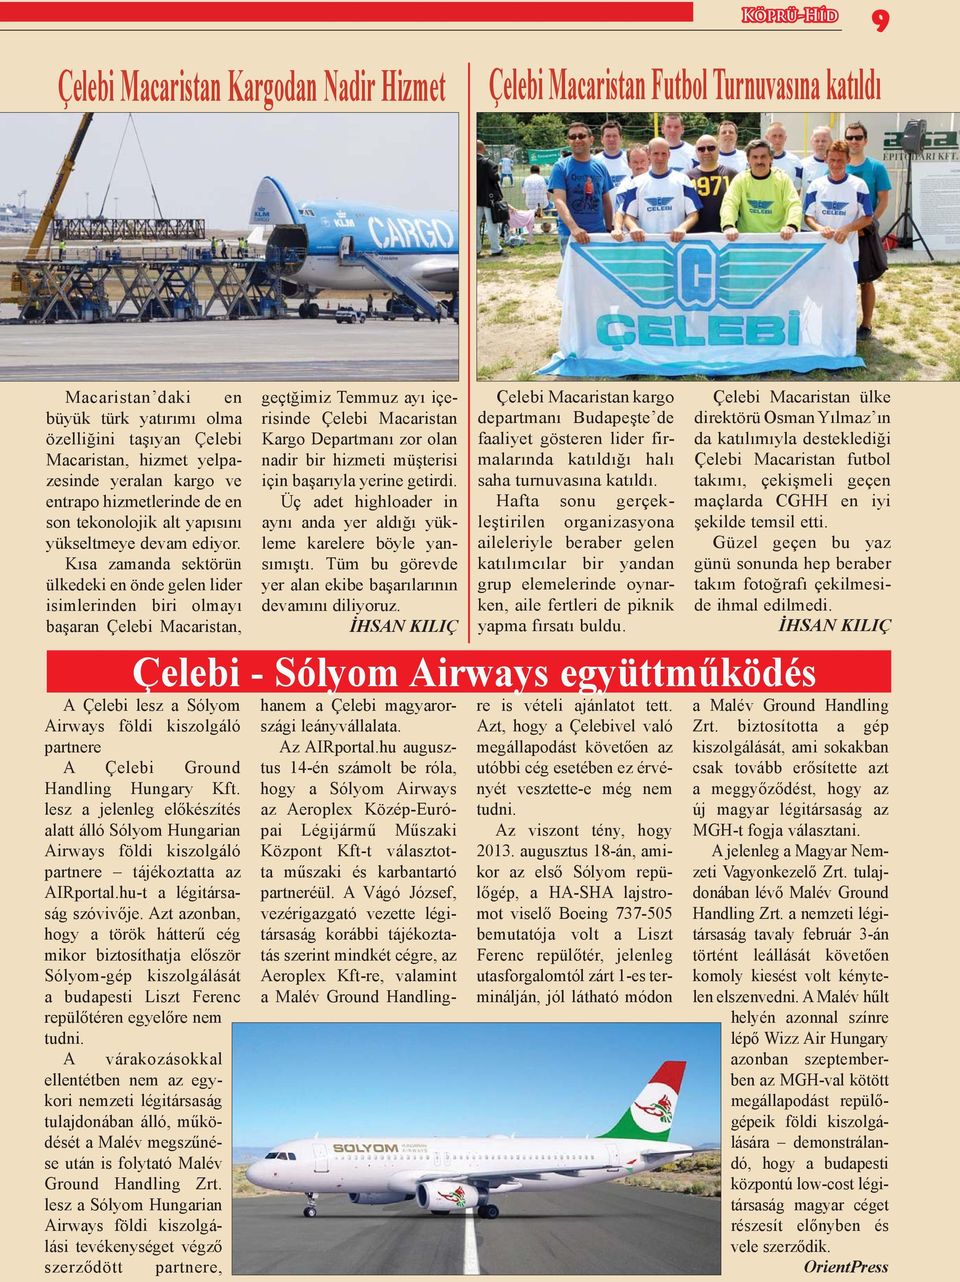 Kısa zamanda sektörün ülkedeki en önde gelen lider isimlerinden biri olmayı başaran Çelebi Macaristan, A Çelebi lesz a Sólyom Airways földi kiszolgáló partnere A Çelebi Ground Handling Hungary Kft.